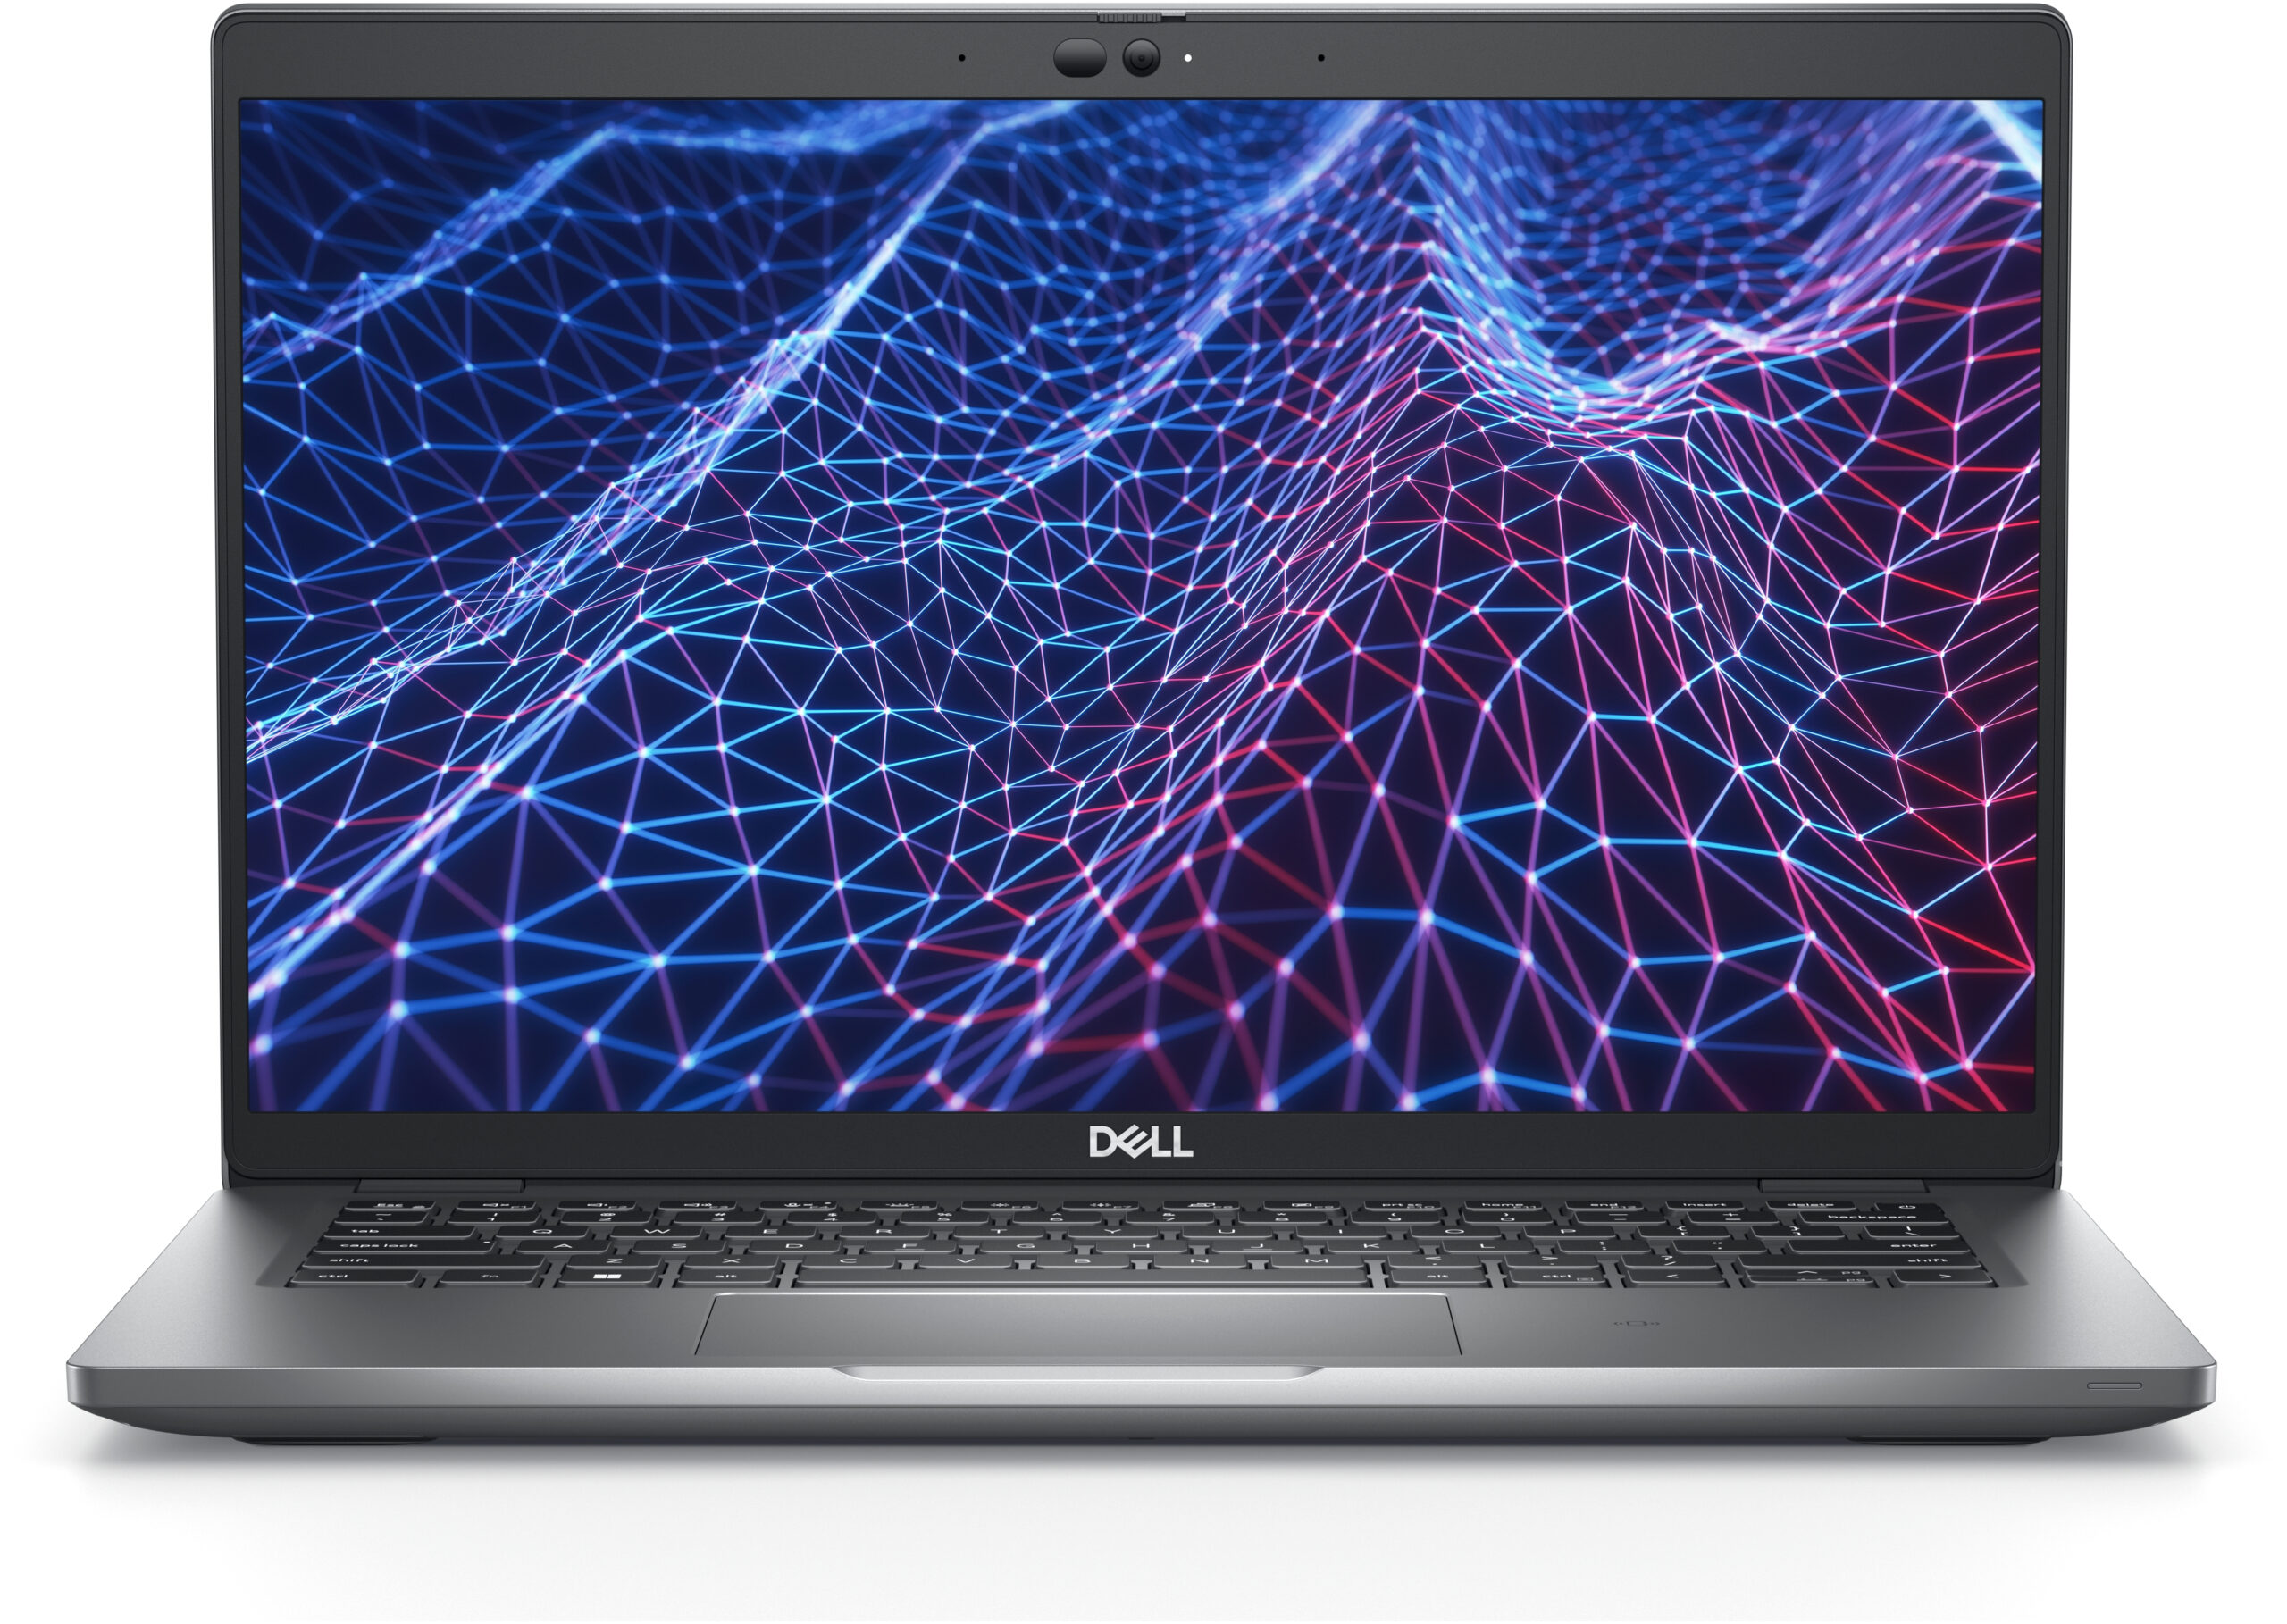 Dieser Dell-Laptop eignet sich hervorragend für Arbeit und Schule und ist 50 % günstiger